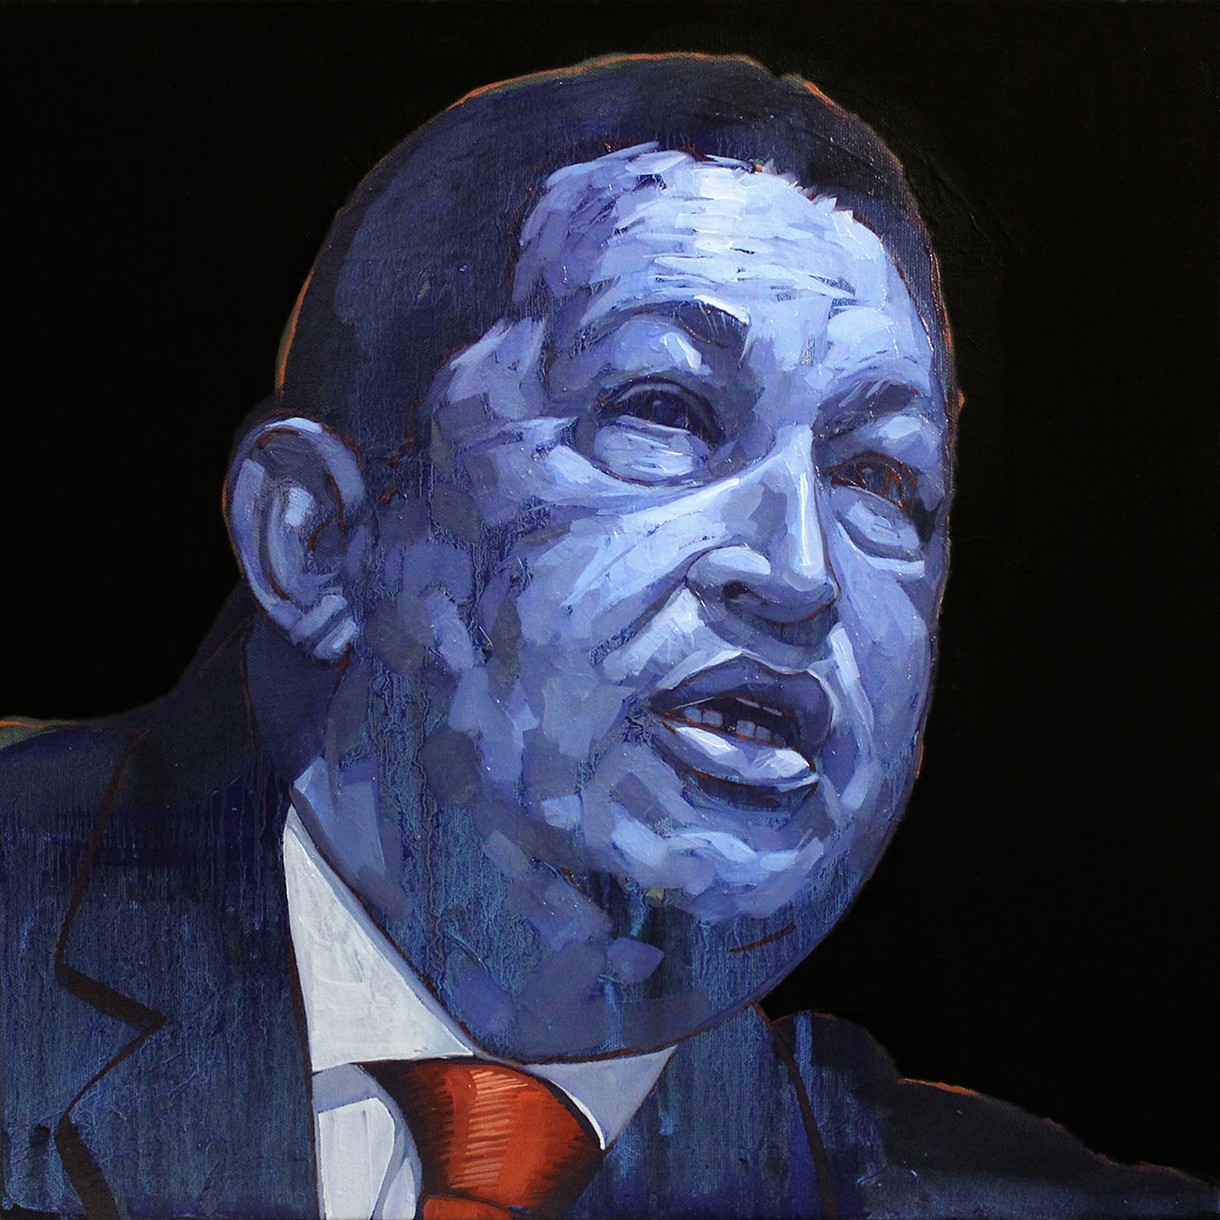 Уго Чавес, картина. Chavez, 2014. Абдул Абдулла (Abdul Abdullah) - современный американский художник. Современное искусство США